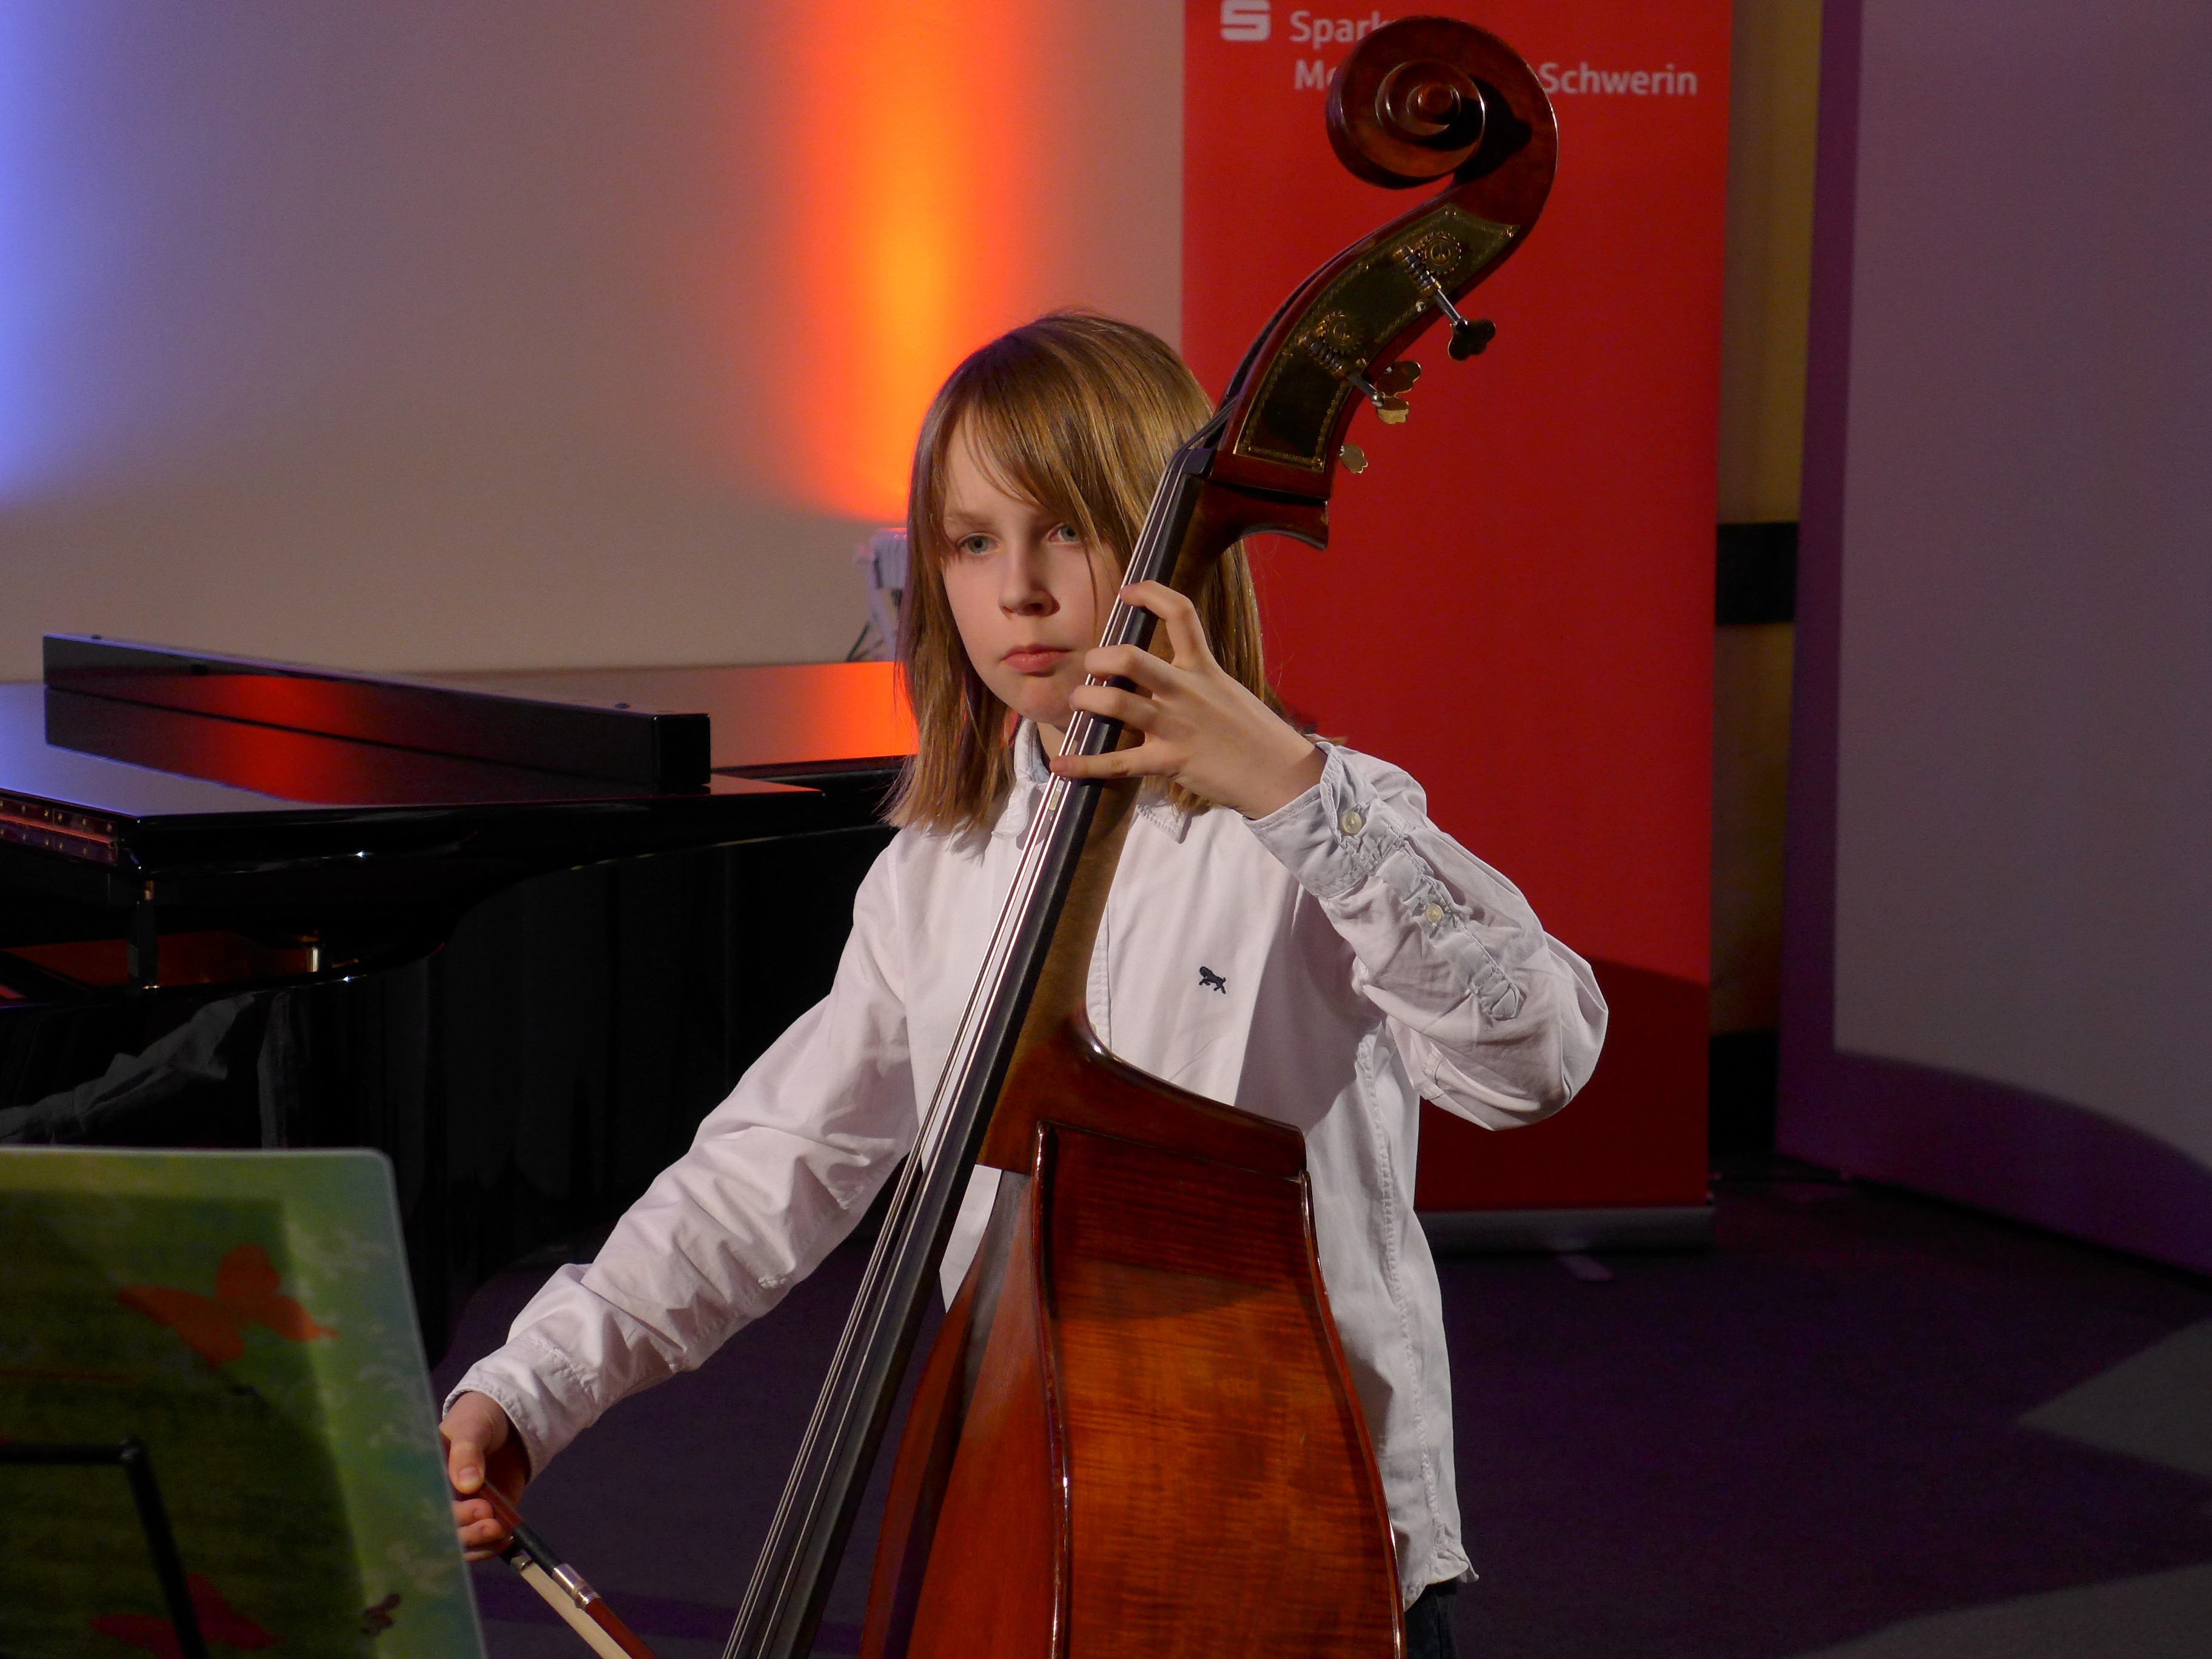 Schwerin: Zwei tolle zweite Preise für zwei junge Musiker